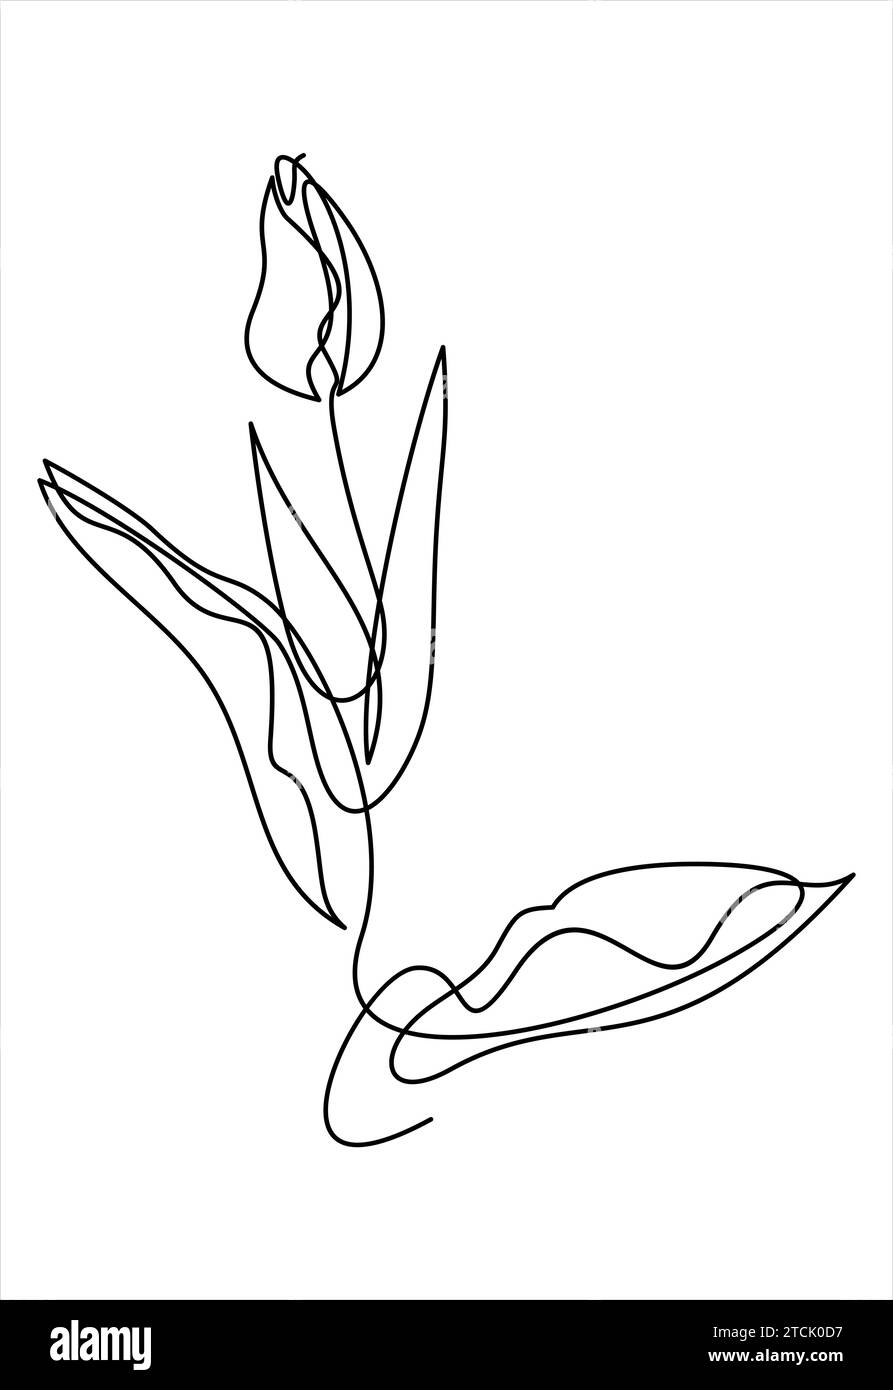 Tulip disegno a una linea. Fiore a linea continua. Illustrazione Vettoriale